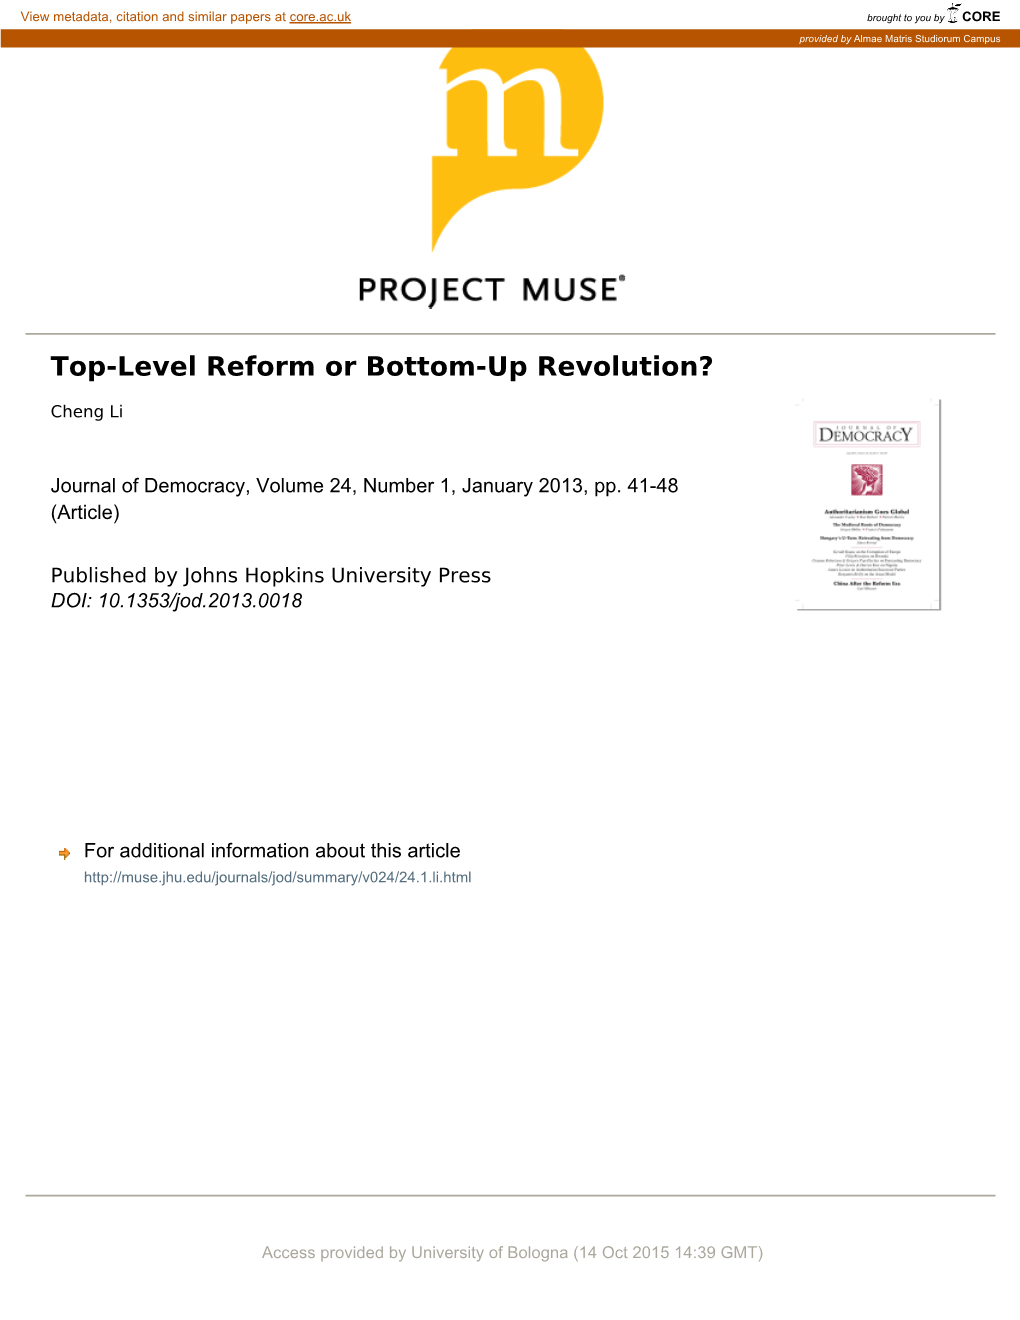 Top-Level Reform Or Bottom-Up Revolution?